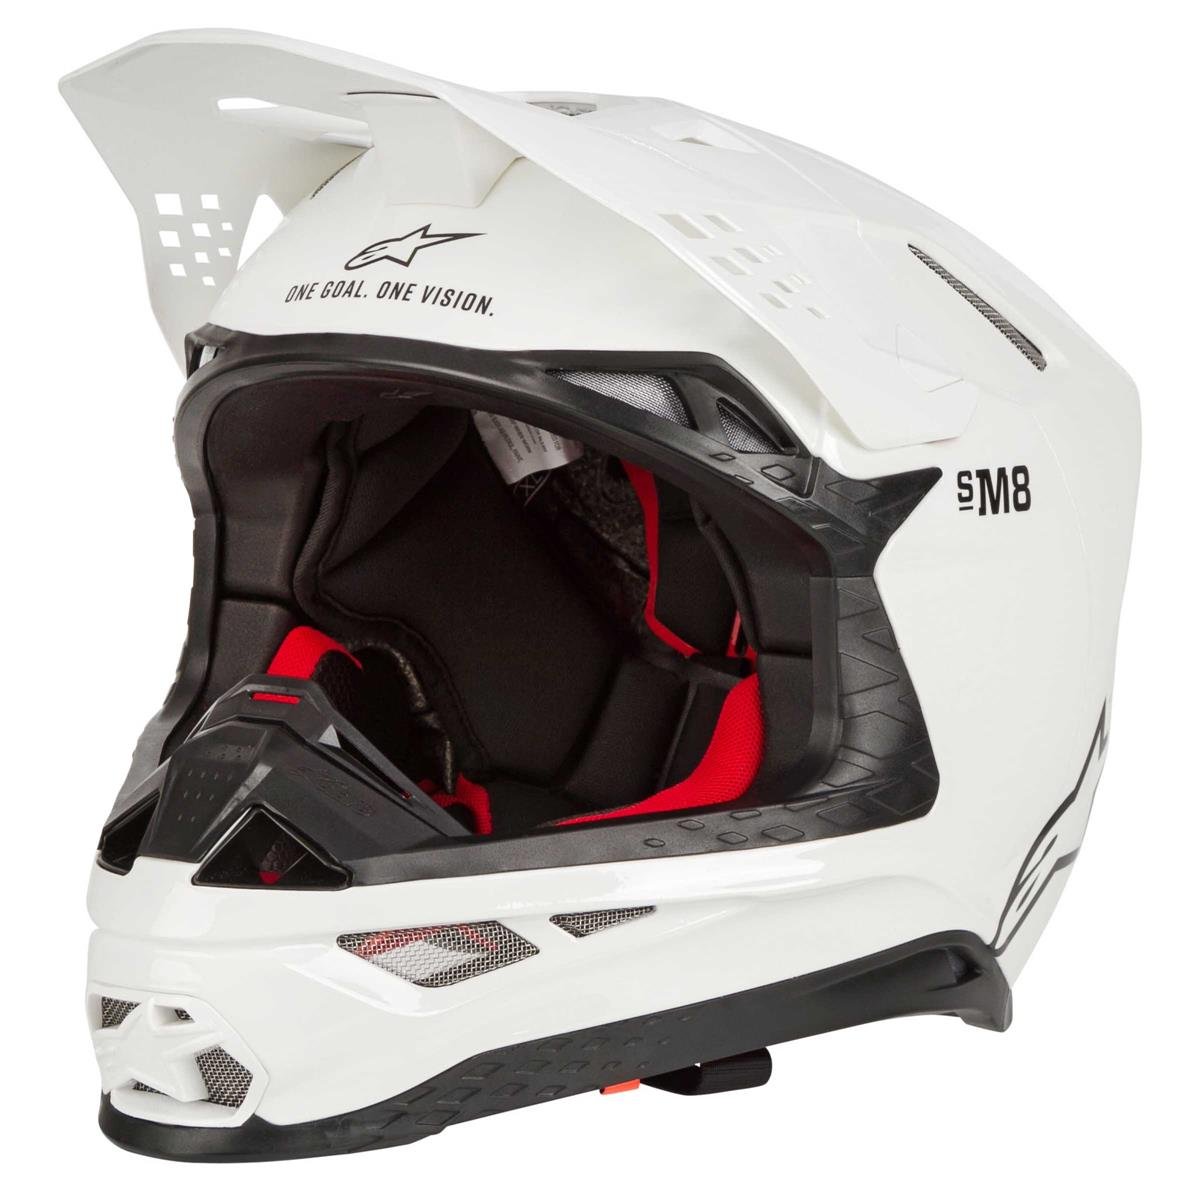 Alpinestars Motocross-Helm Supertech S-M8 Solid - Weiß Gloss